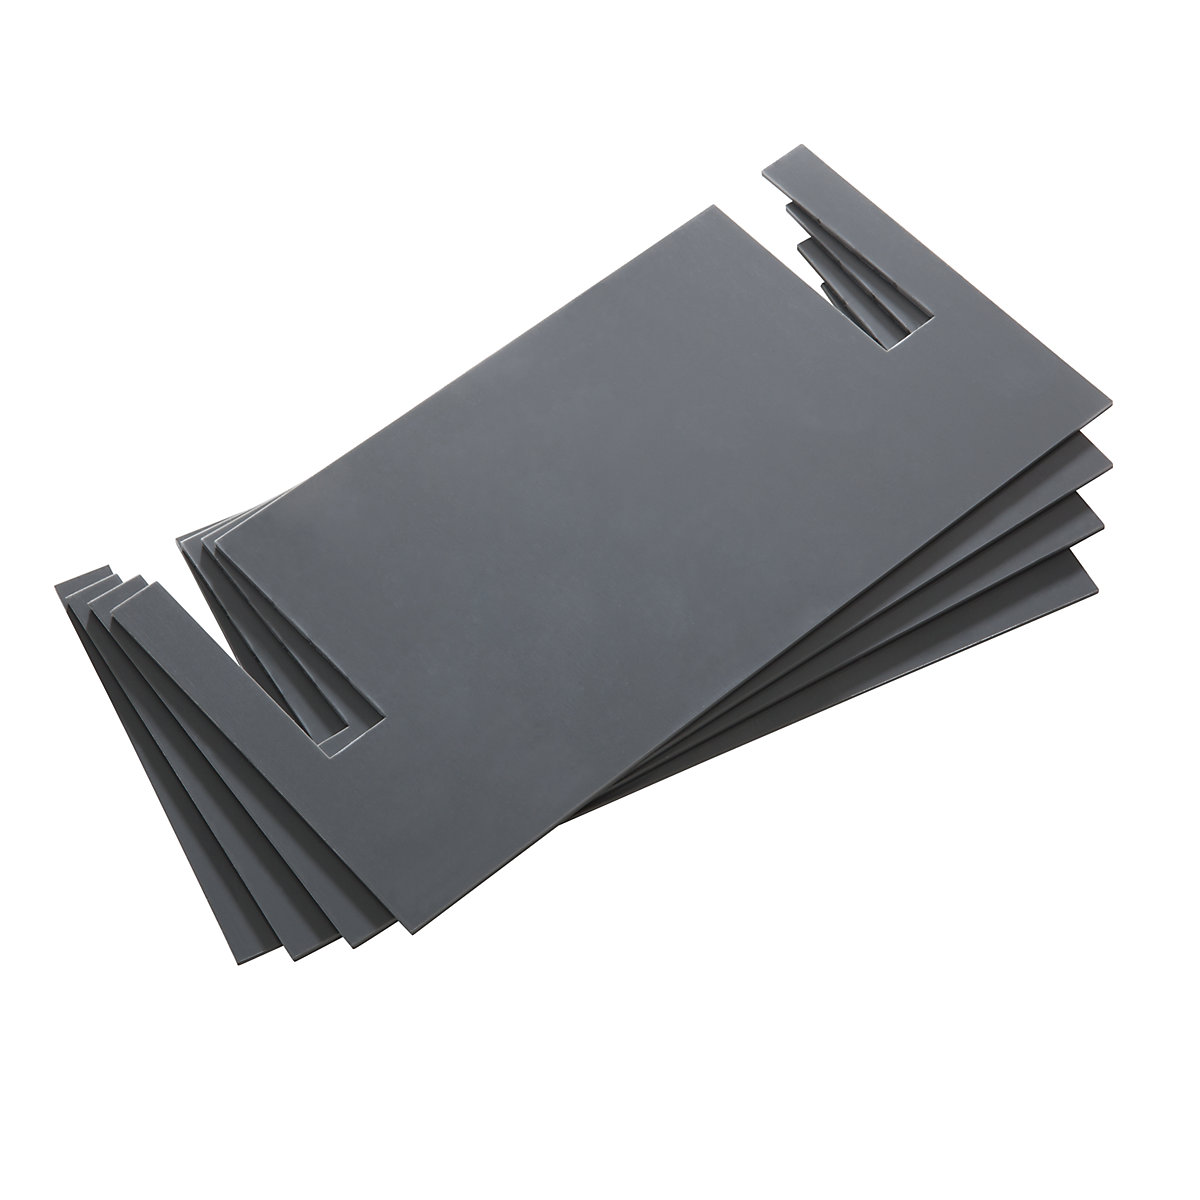 Plaques de mise à niveau – LISTA, PVC, gris, lot de 4, épaisseur 2 mm-5